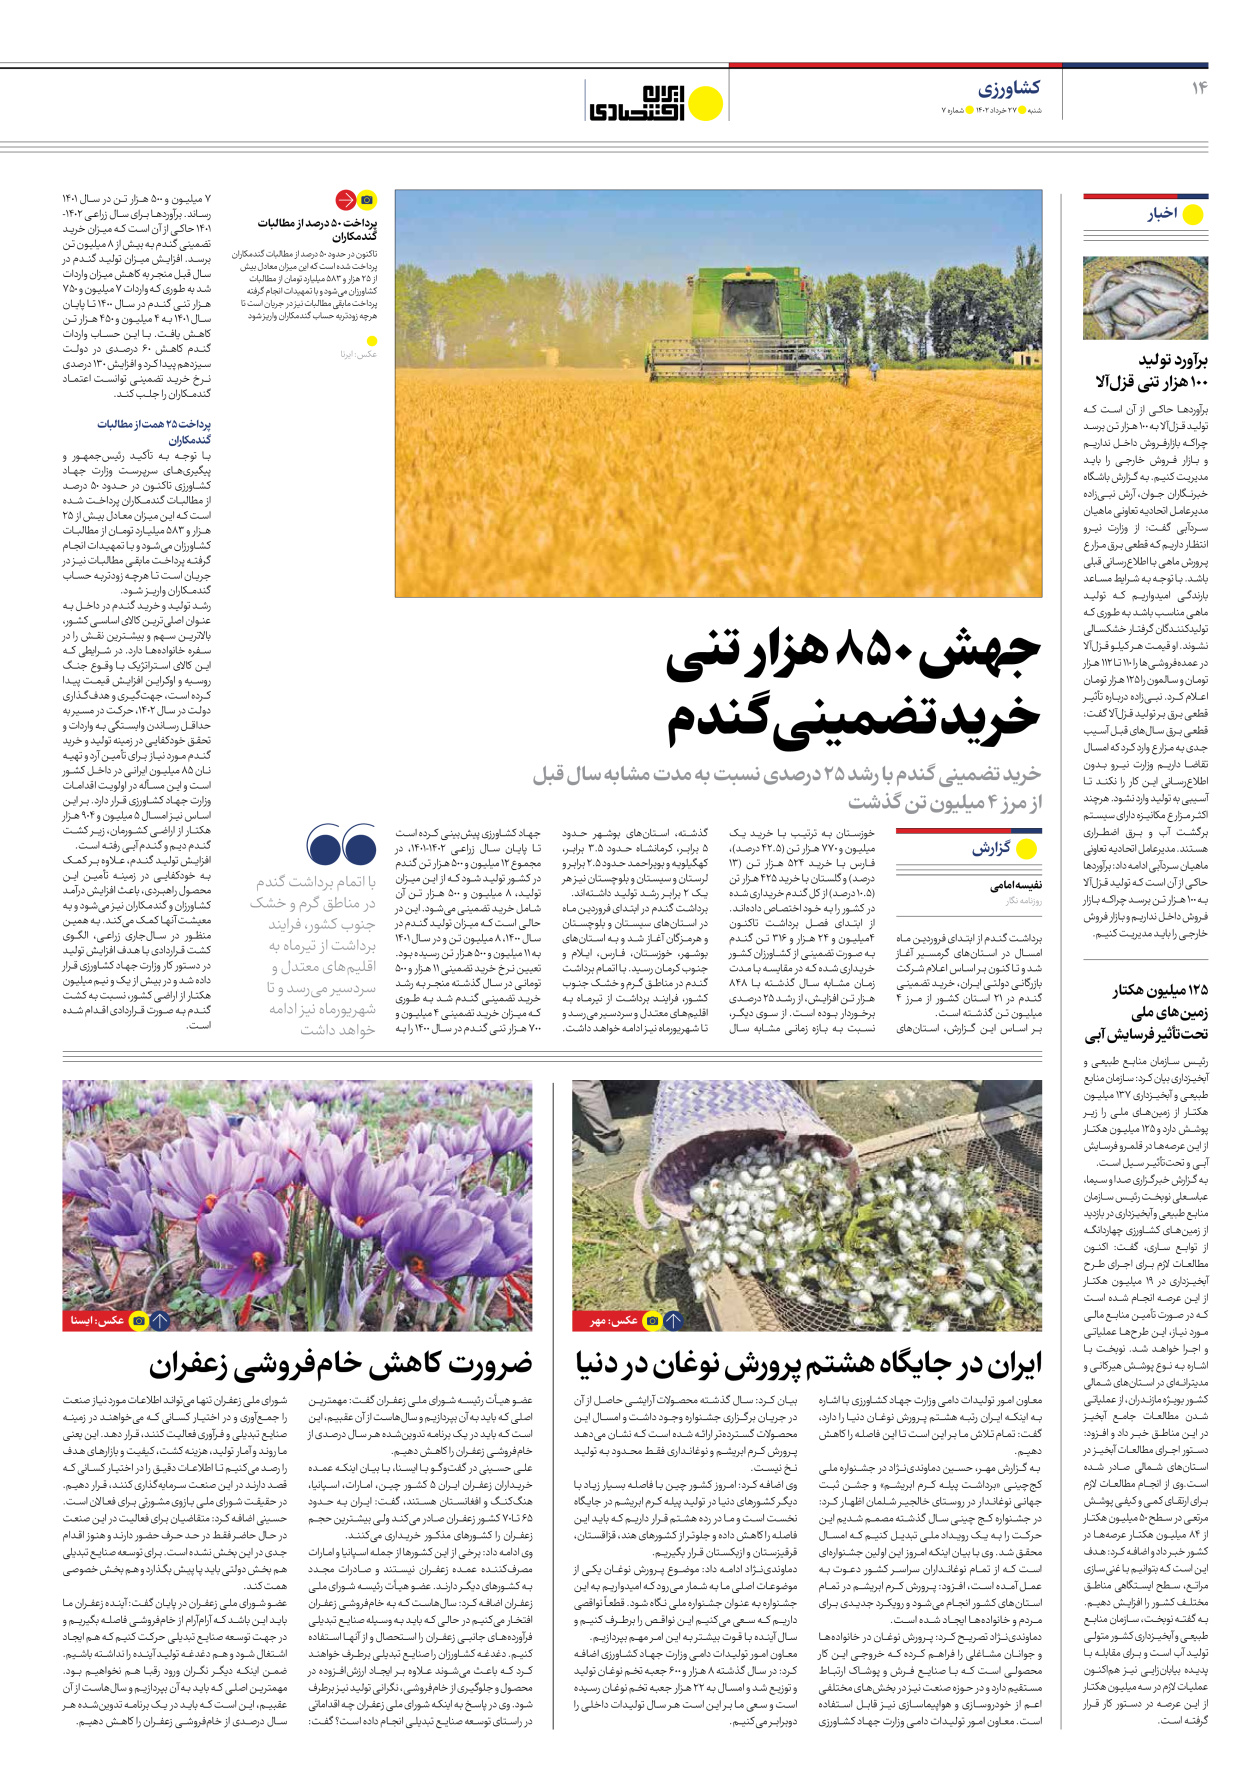 روزنامه ایران اقتصادی - شماره هفت - ۲۷ خرداد ۱۴۰۲ - صفحه ۱۴